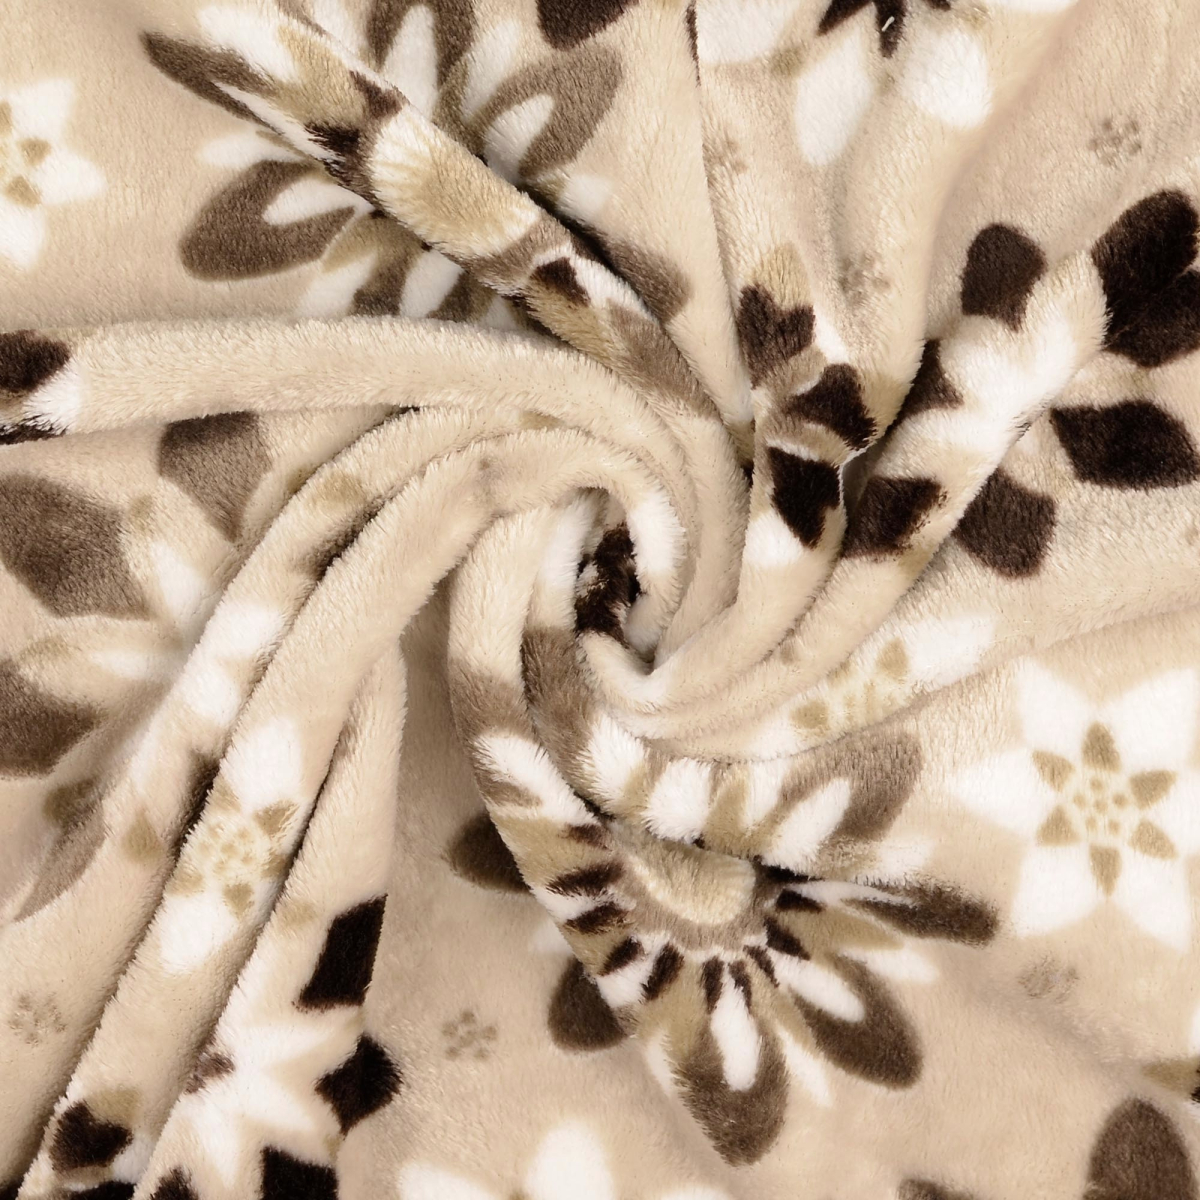 Couverture Sherpa à motif Floral Vintage, jolie couverture en